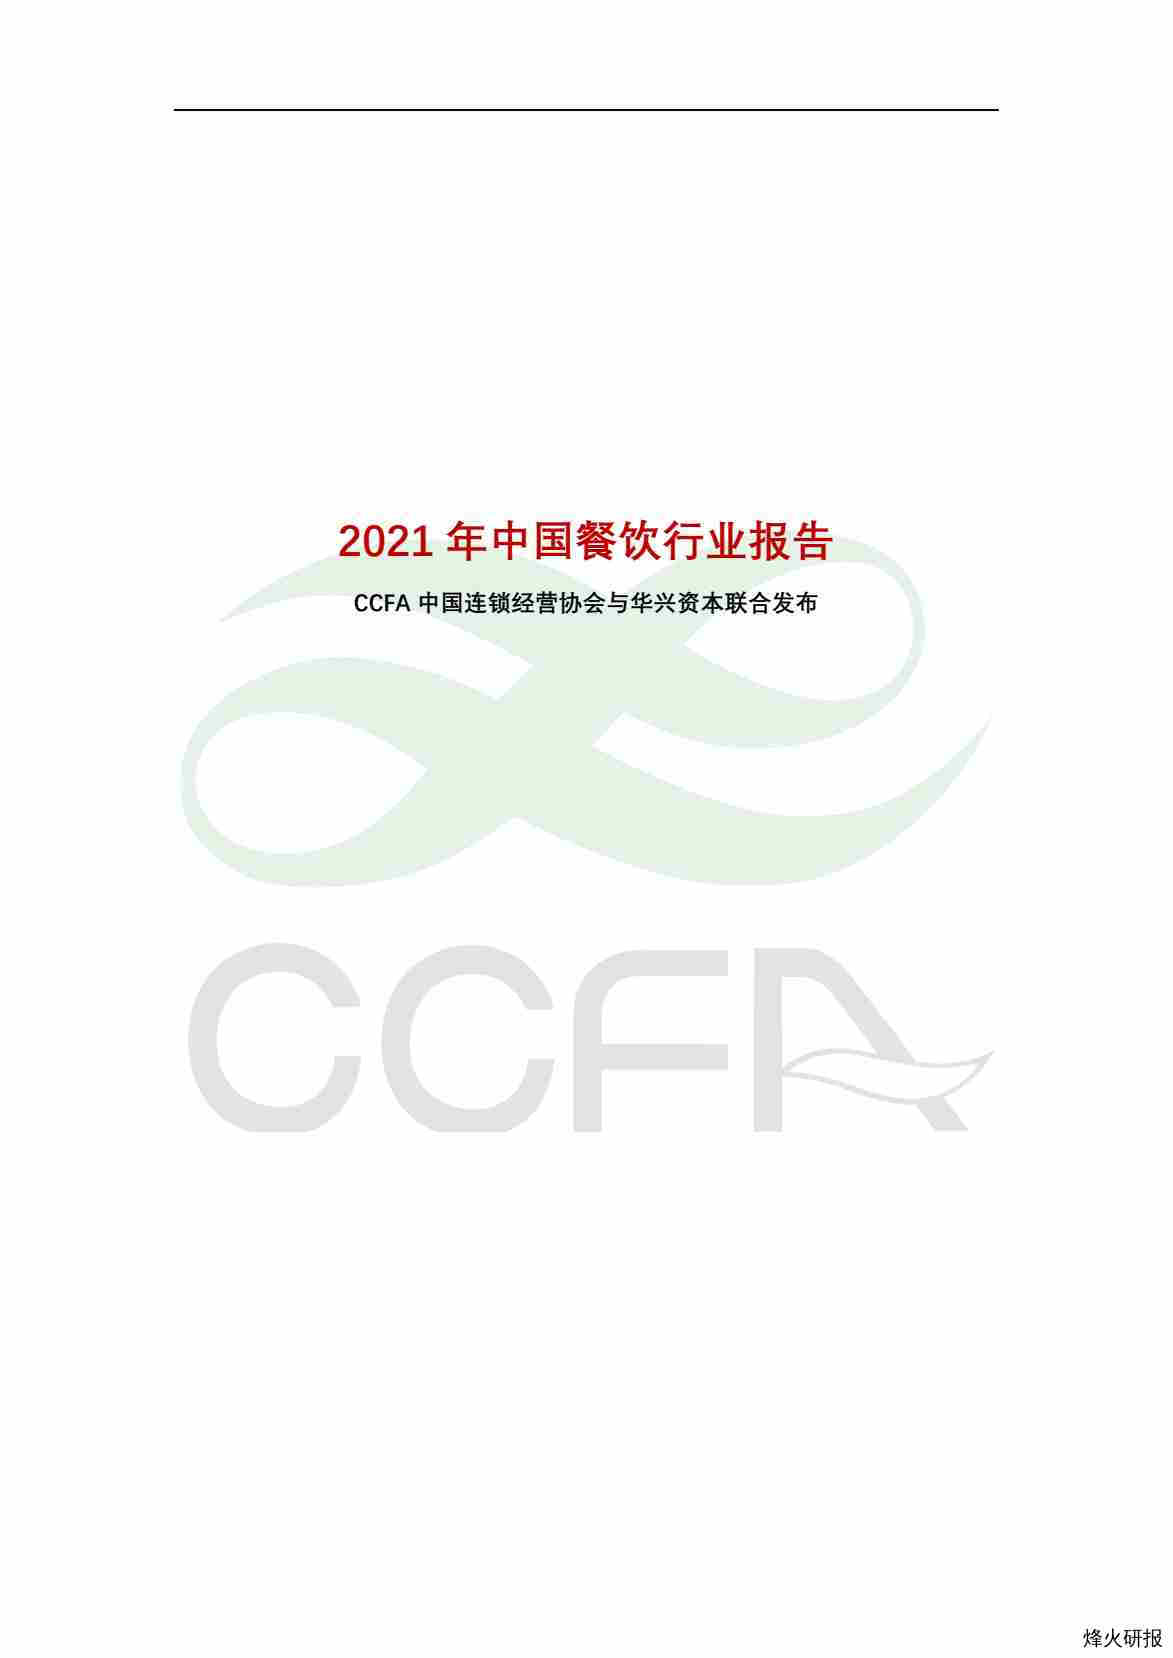 【中国连锁经营协会】中国连锁经营协会-2021年中国连锁餐饮行业报告-全文.pdf-第一页